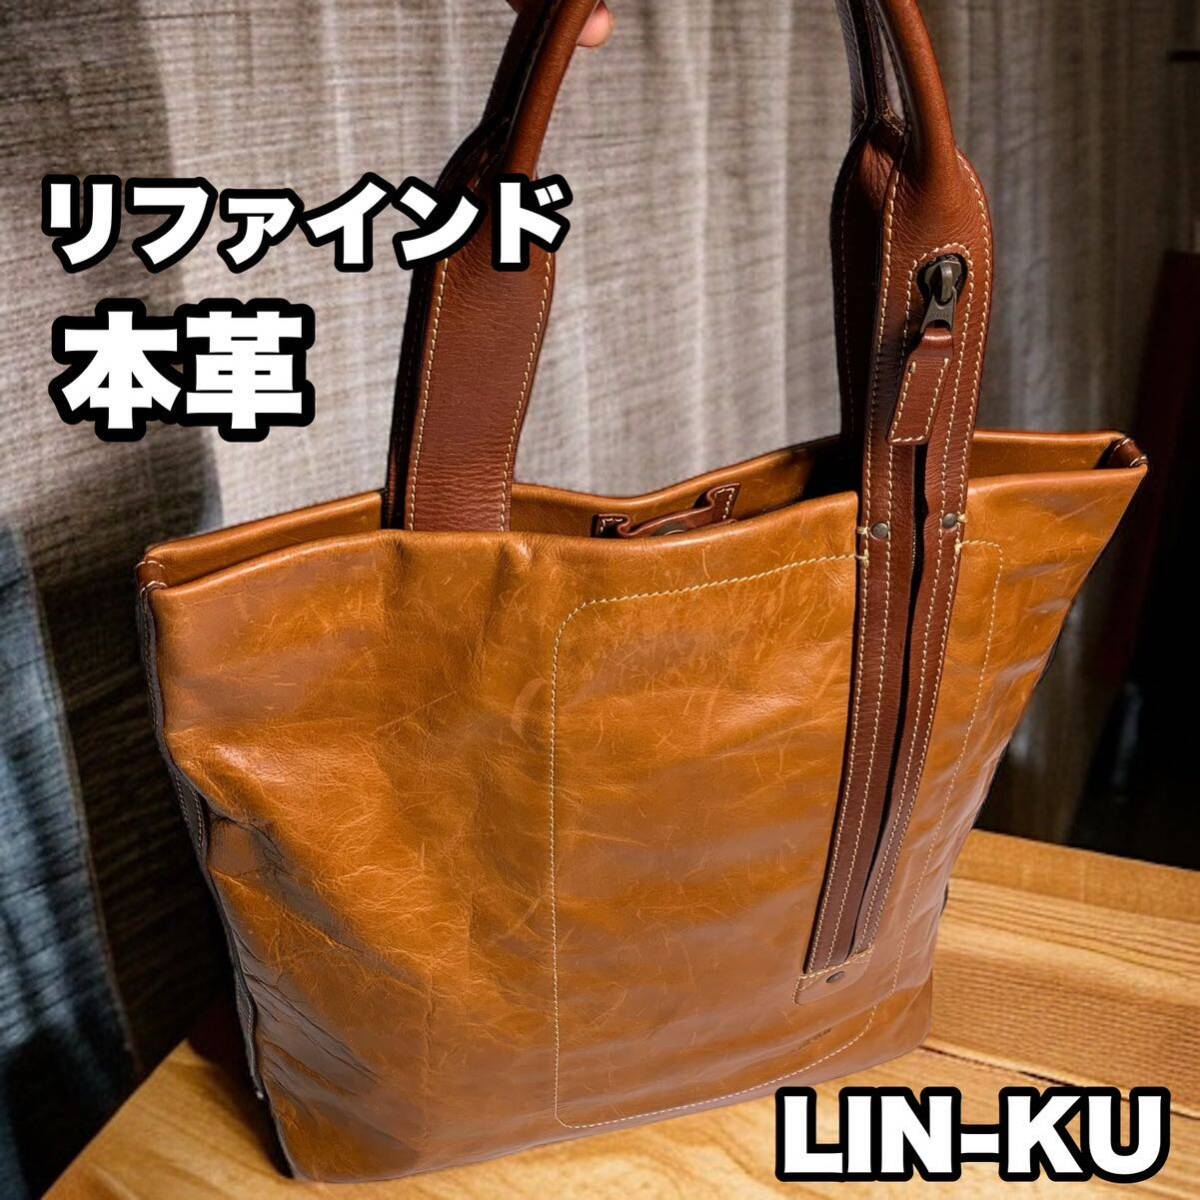 LIN-KU 輪枸 メンズ オールレザー トートバッグ ヘルメットバッグ 本革 日本製 ブラウン リンク 外側ポケット3 ビジネストート